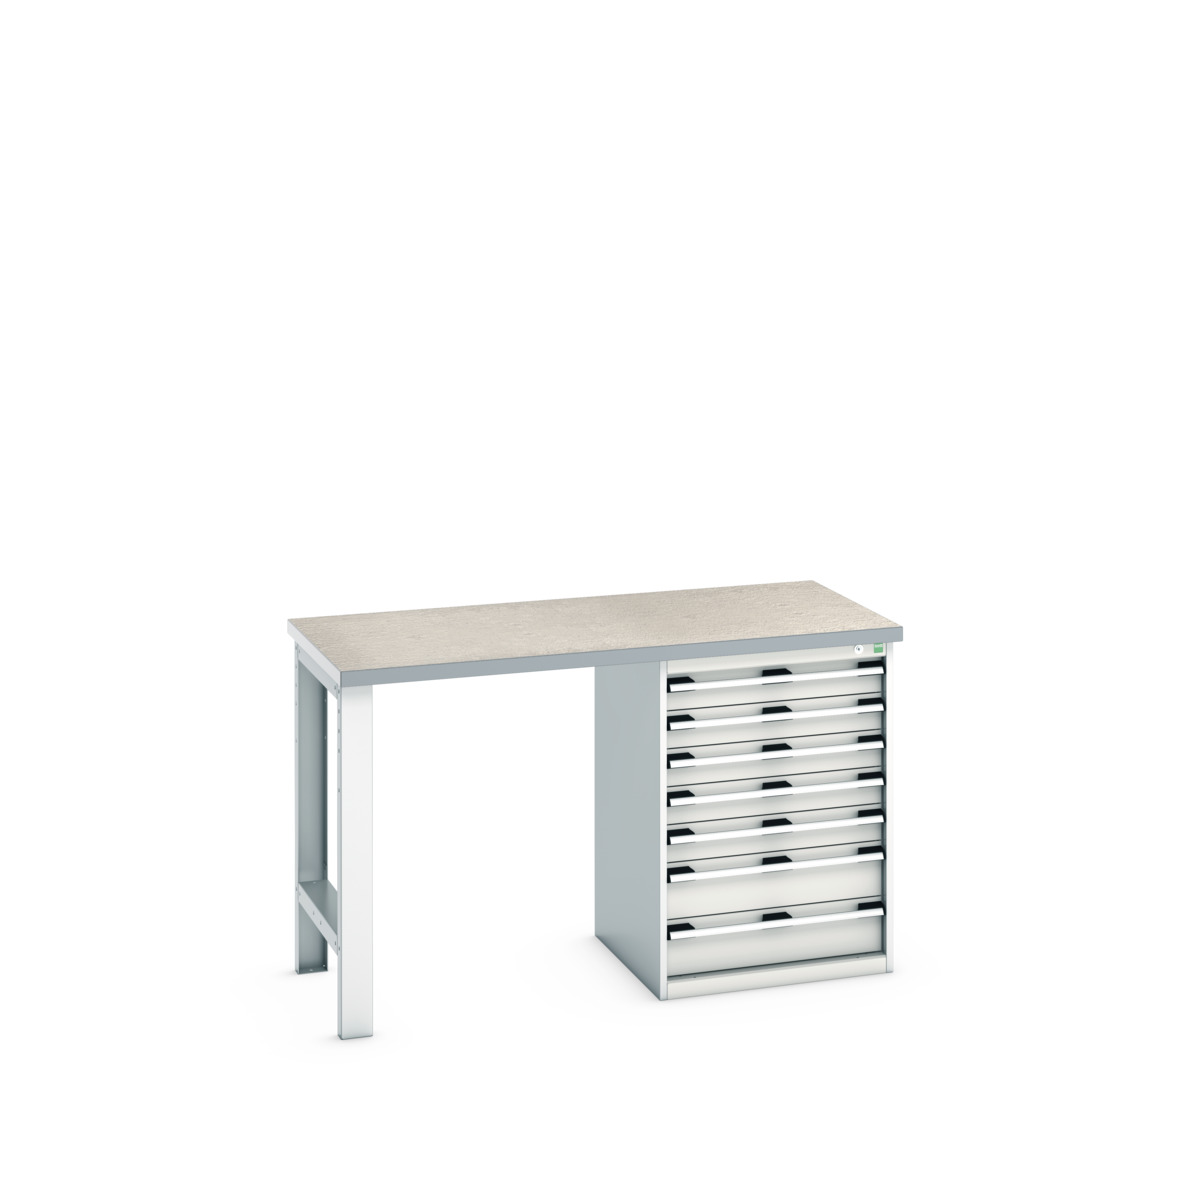 41003497.16V - cubio pedestal bench (lino)